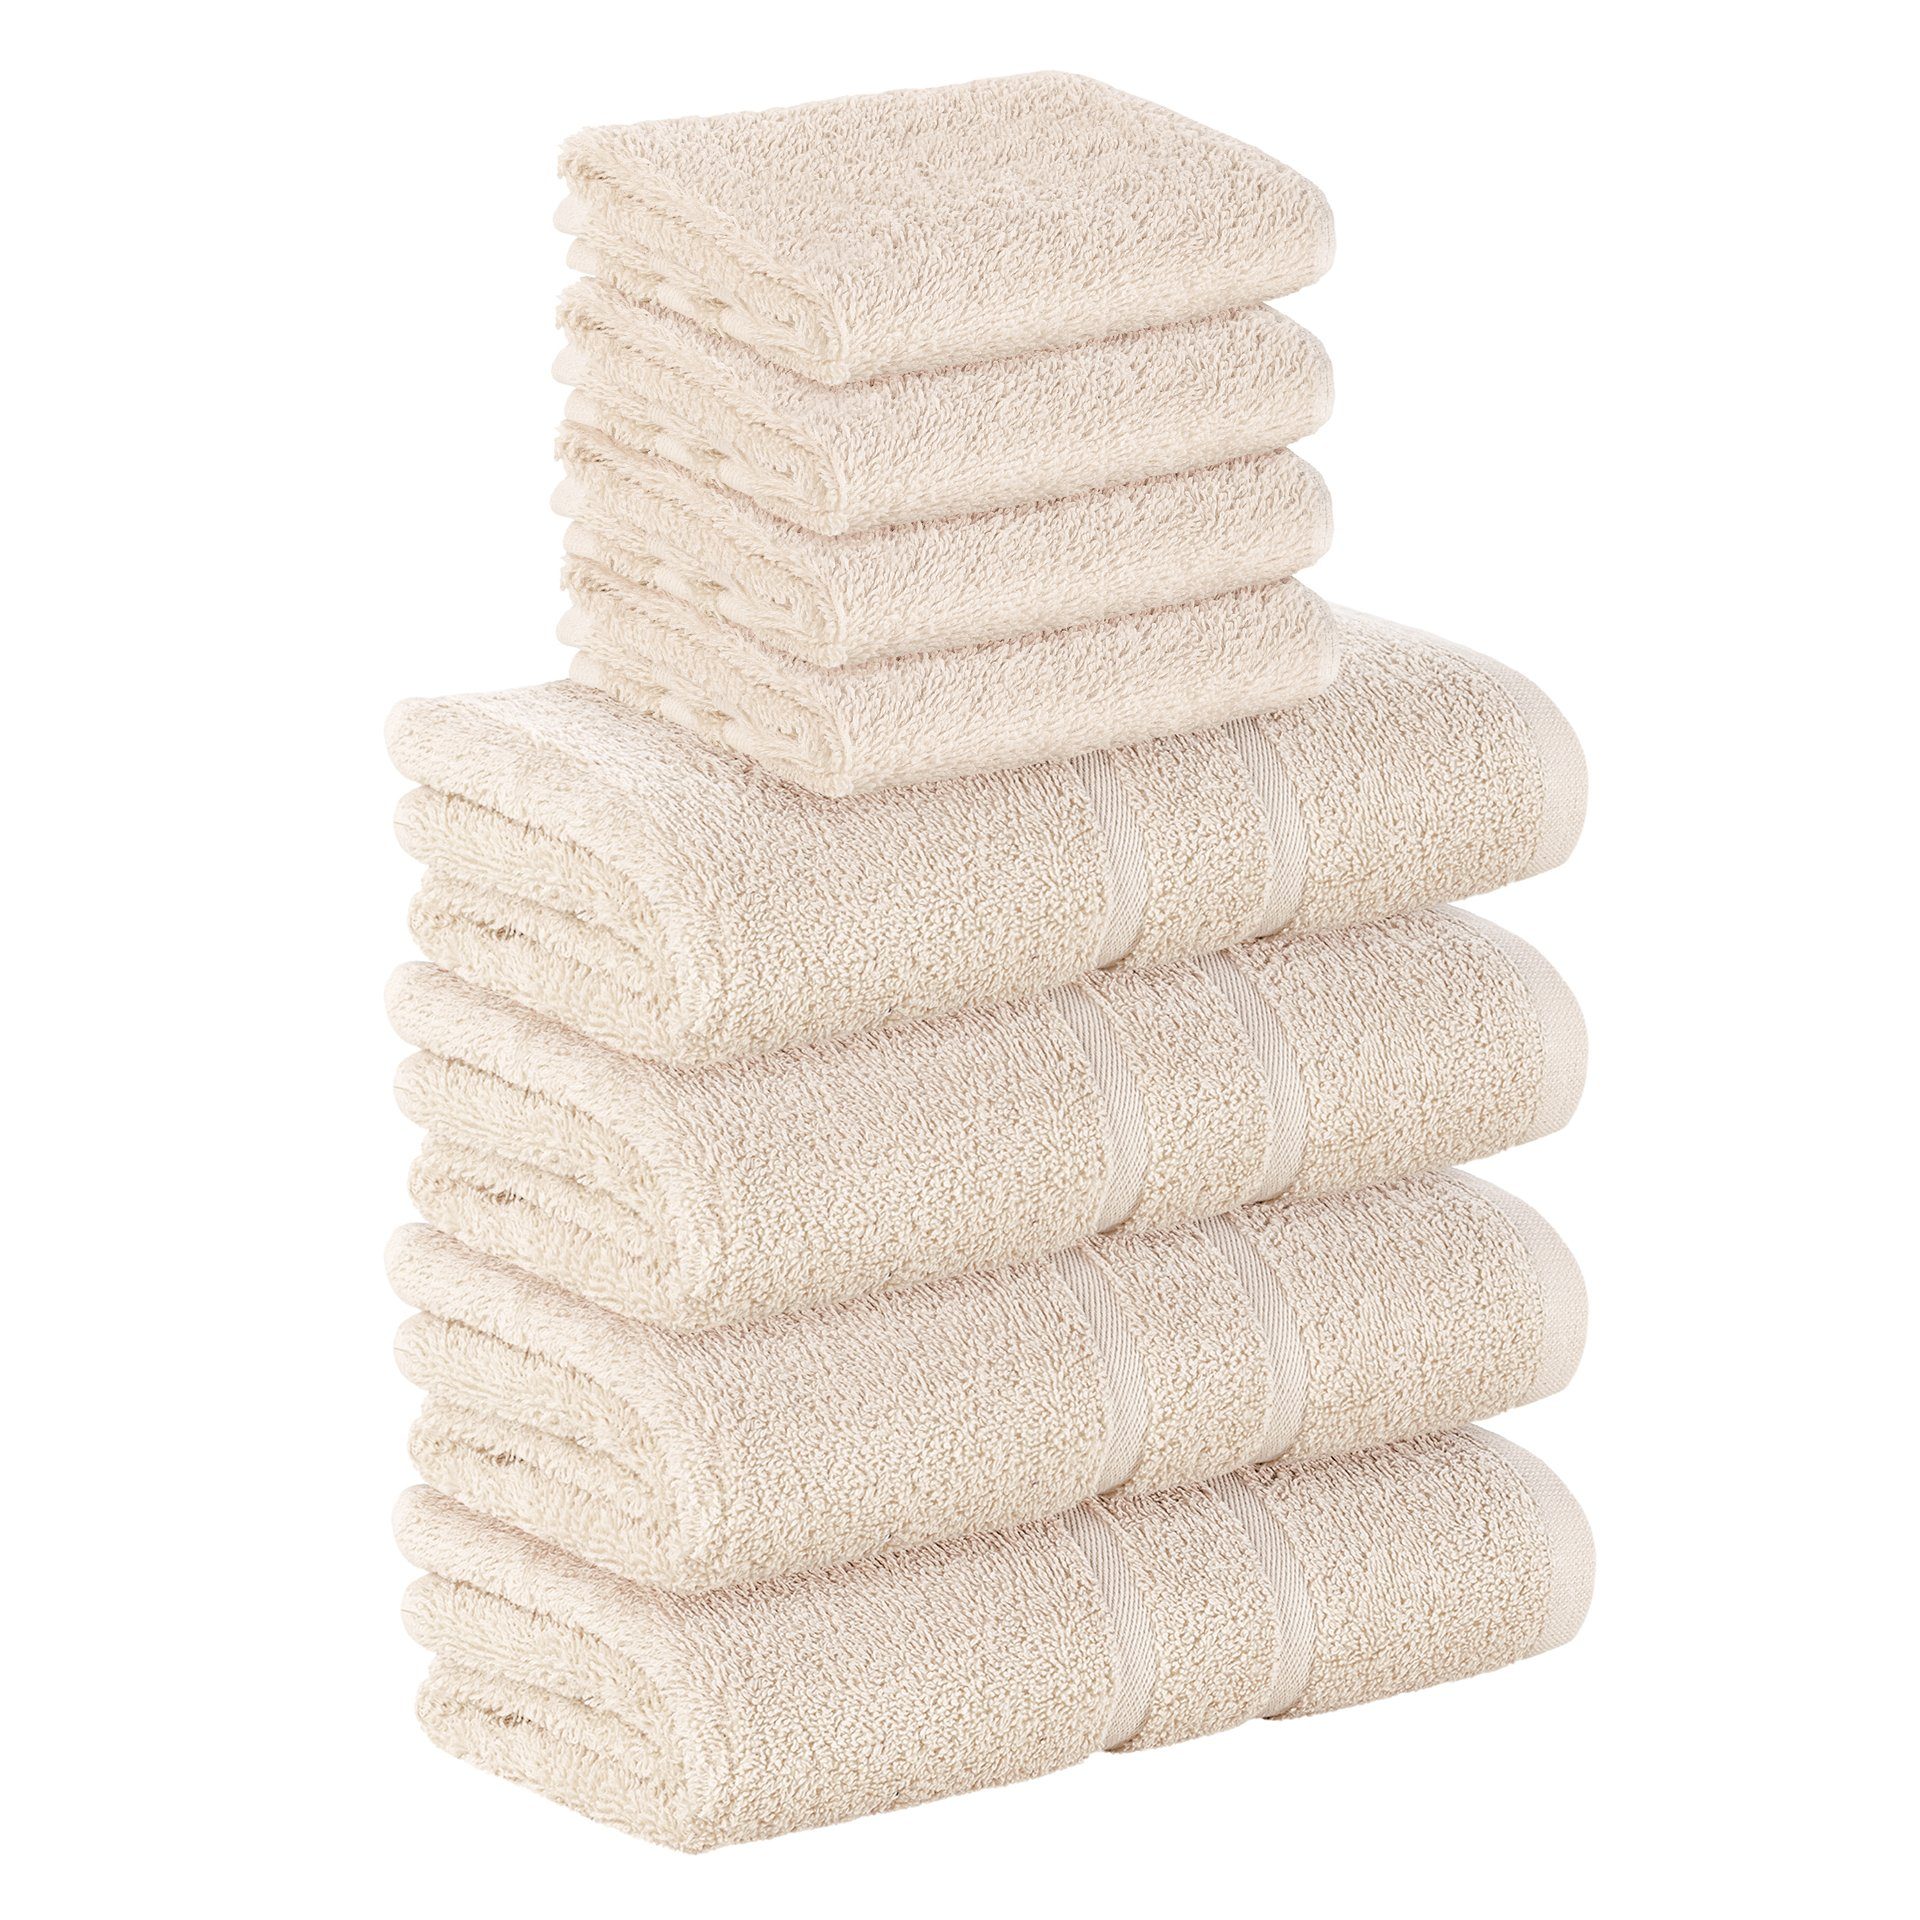 StickandShine Handtuch Set 4x Gästehandtuch 4x Handtücher als SET in verschiedenen Farben (8 Teilig) 100% Baumwolle 500 GSM Frottee 8er Handtuch Pack, 100% Baumwolle 500 GSM Creme